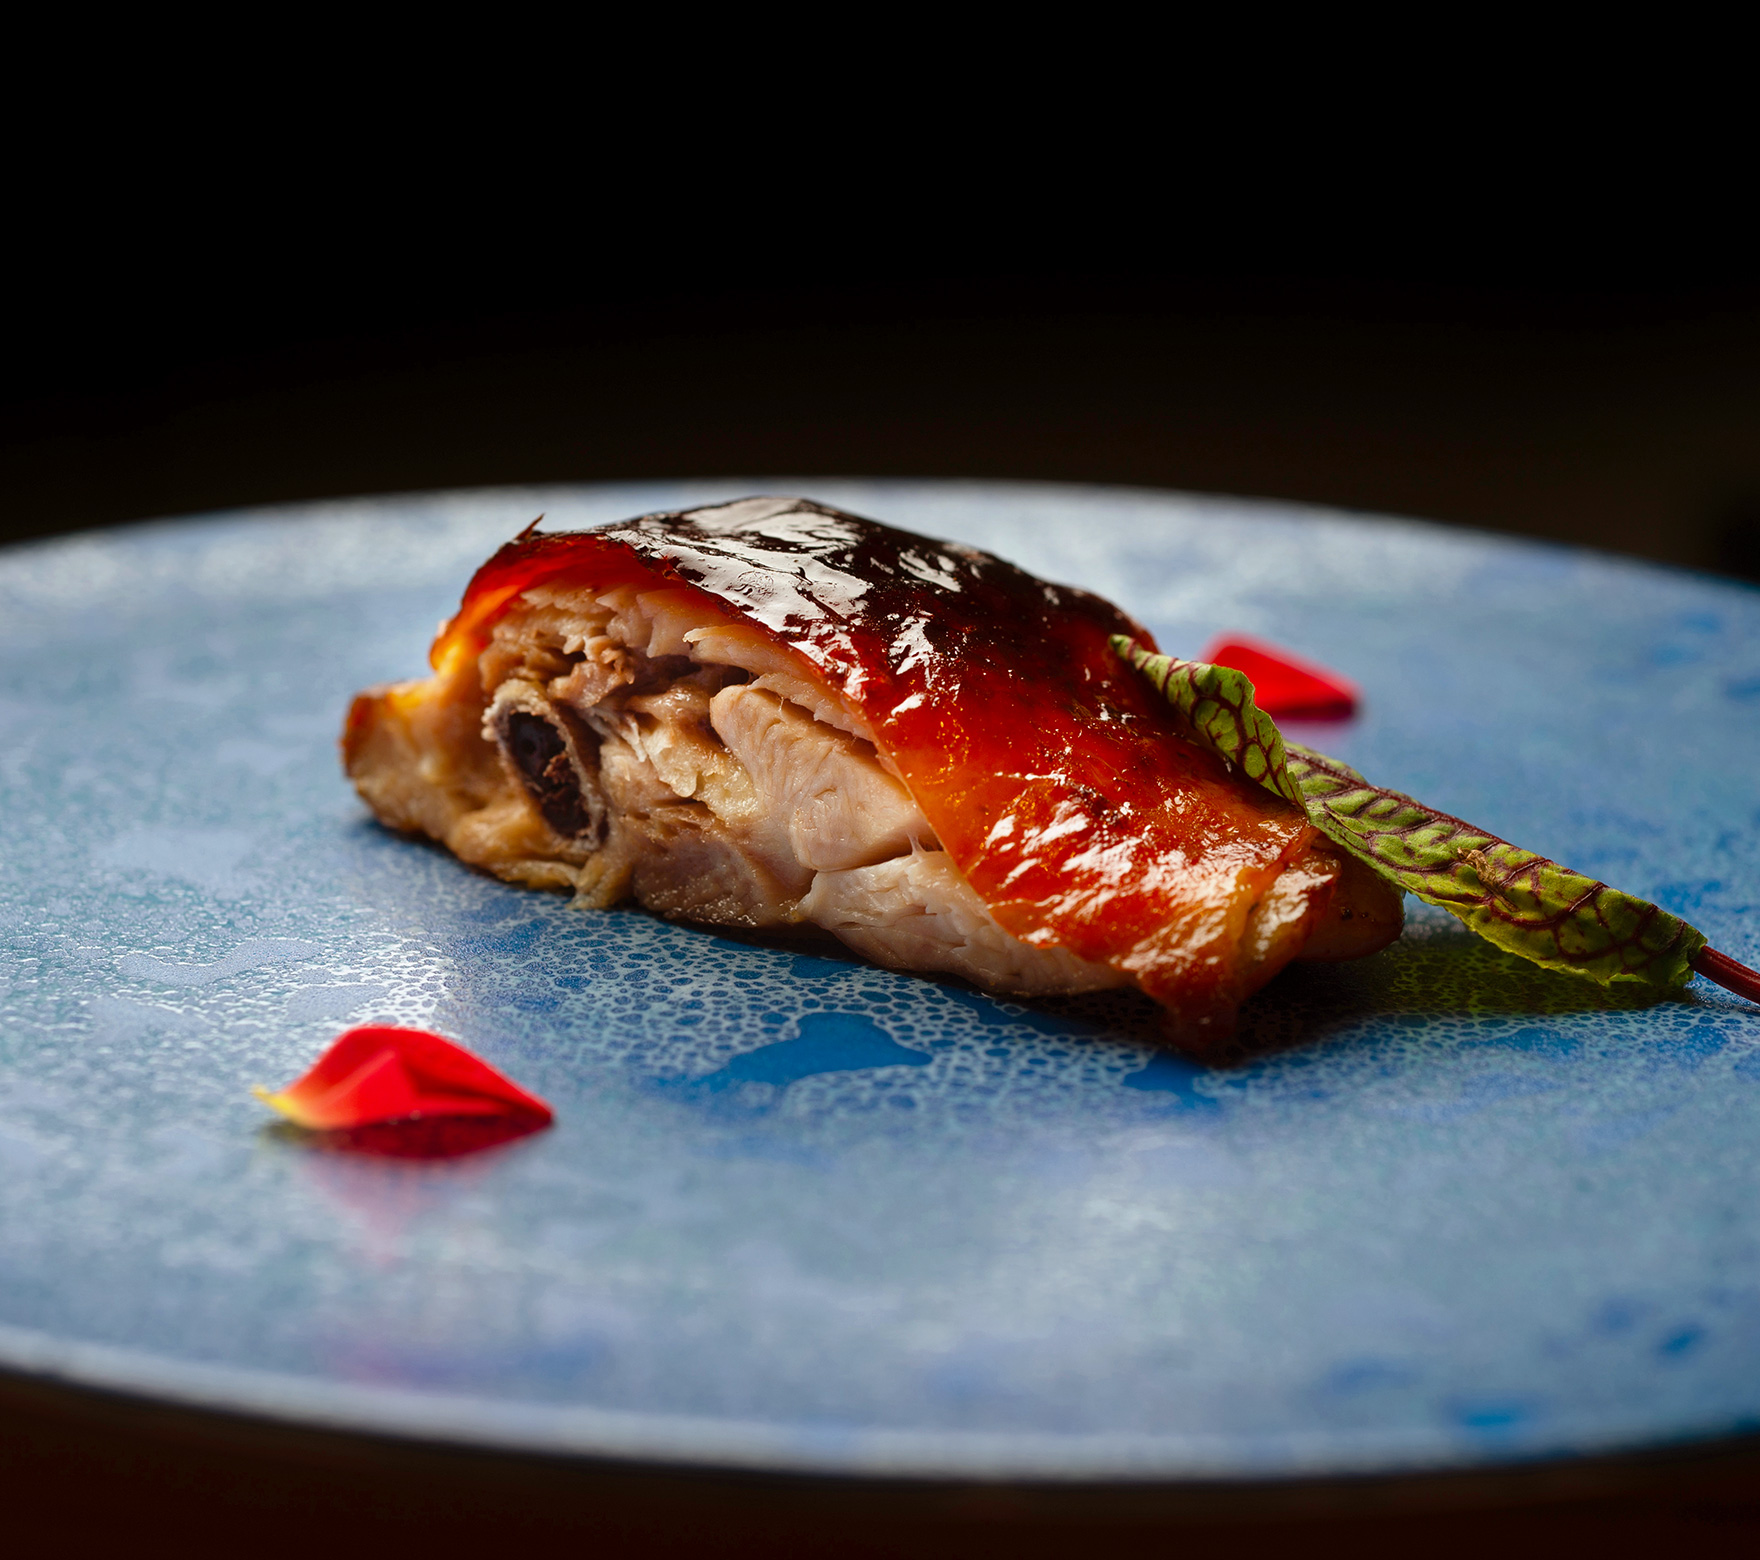 青い皿に華やかに盛り付けられた「地鶏のパリパリ焼き」